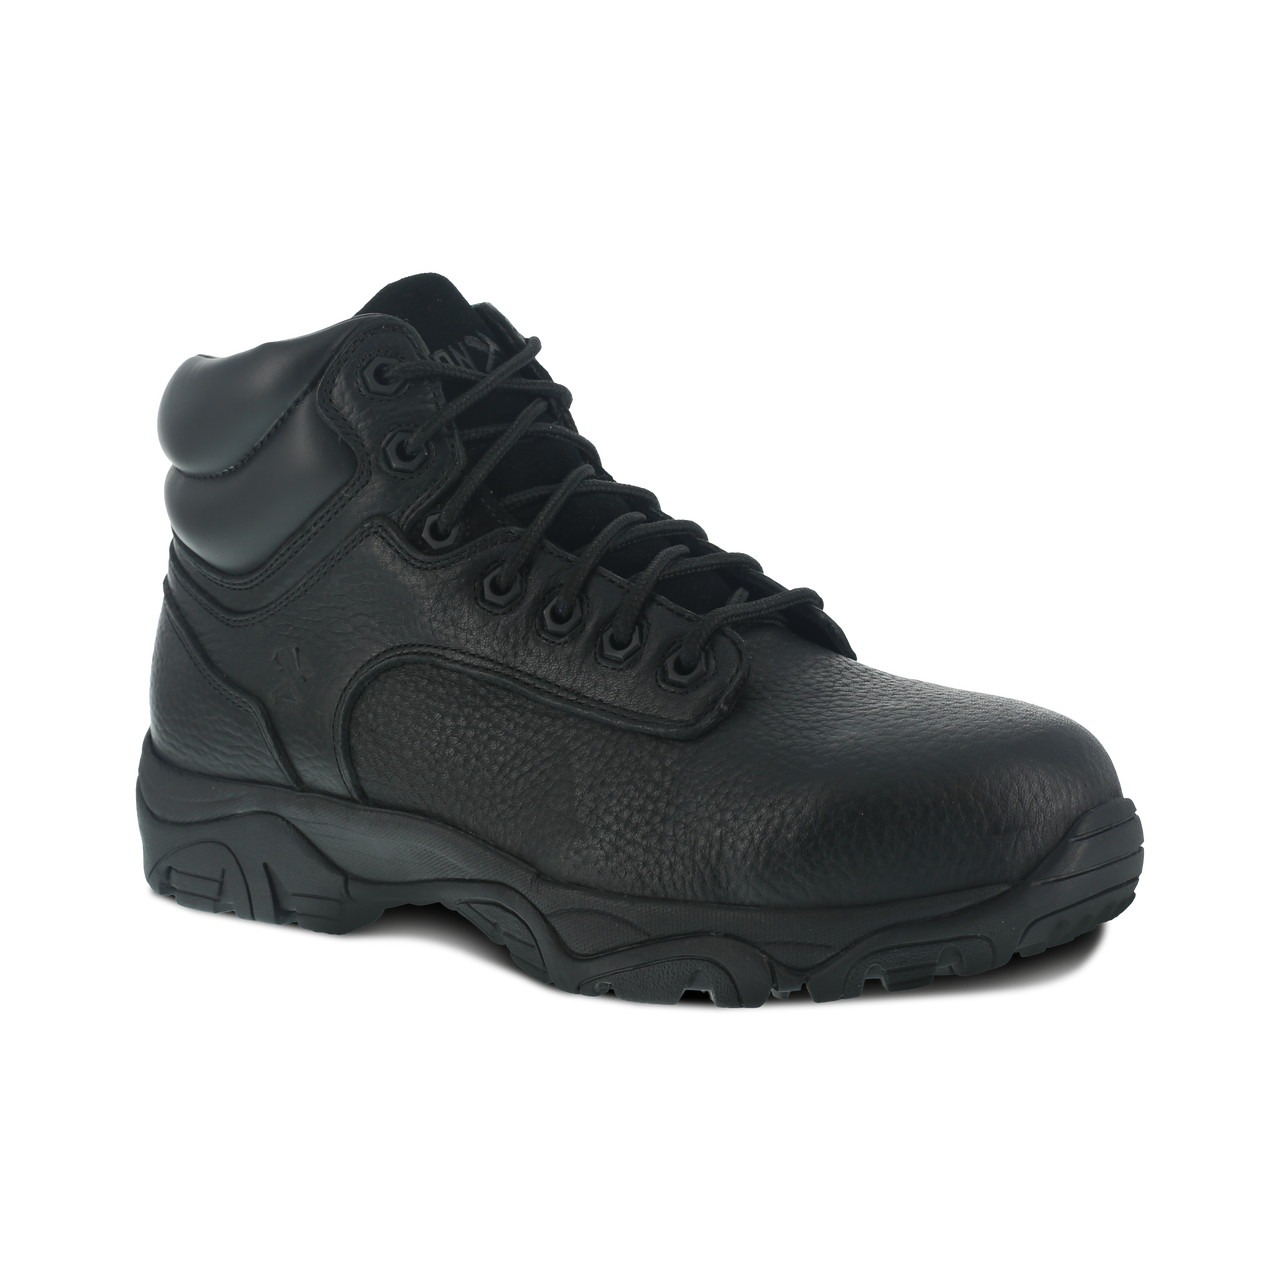 Trencher - IA5007 - Men's Work Boot - No-Metal, Composite Toe - Black